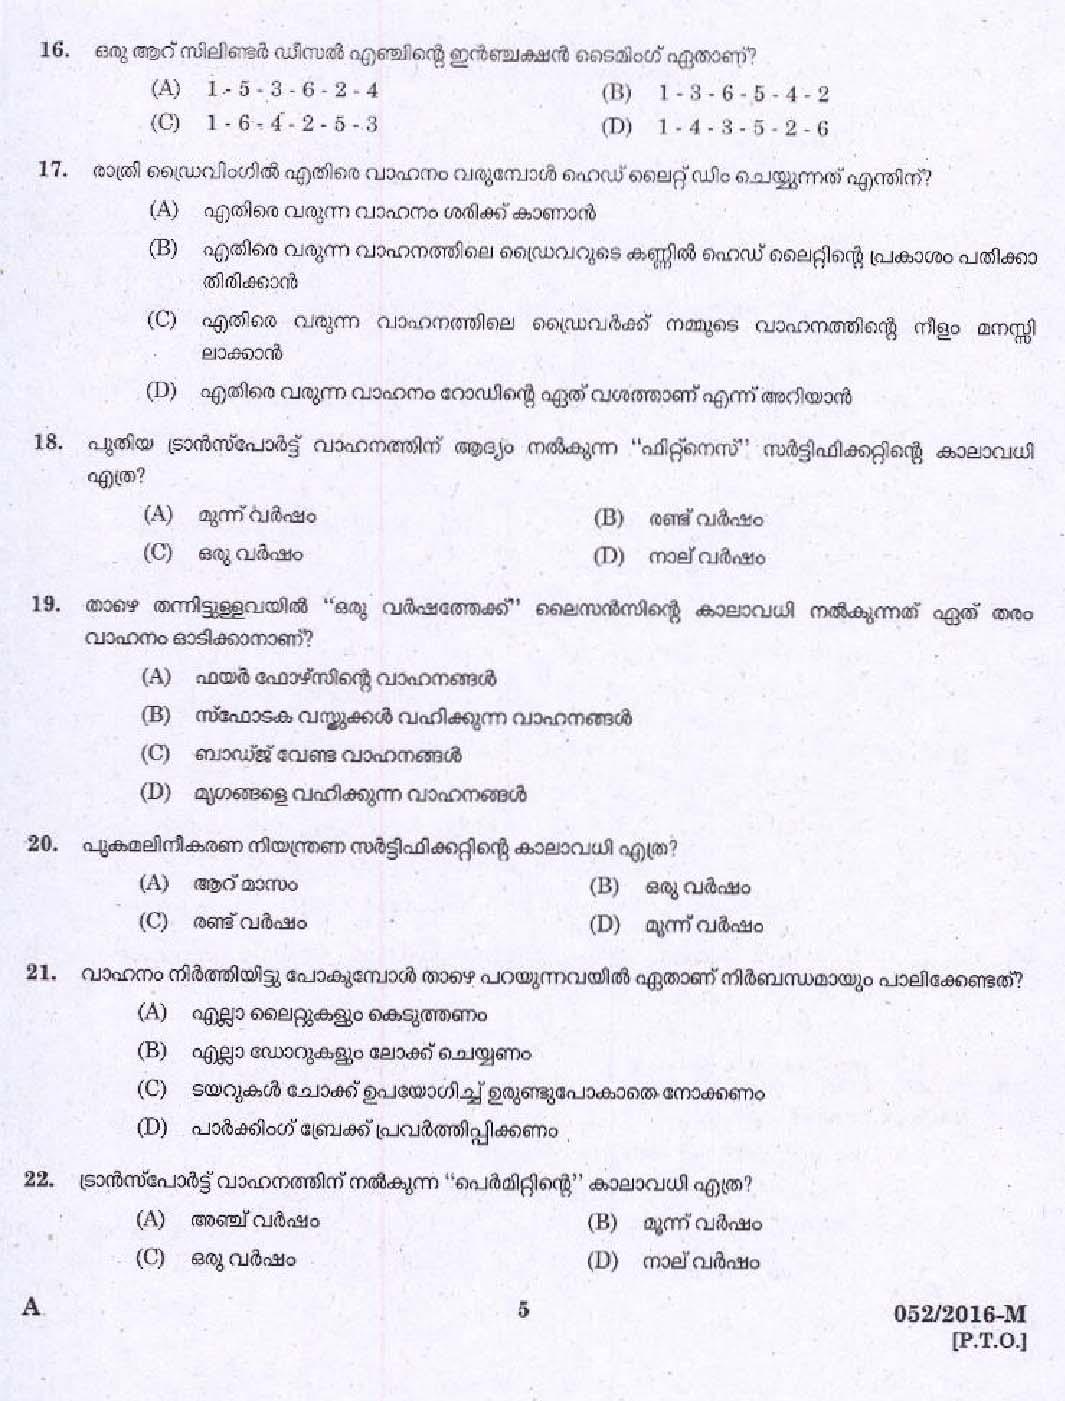 Kerala PSC Driver Grade II Exam 2016 Question Paper Code 0522016 M 3